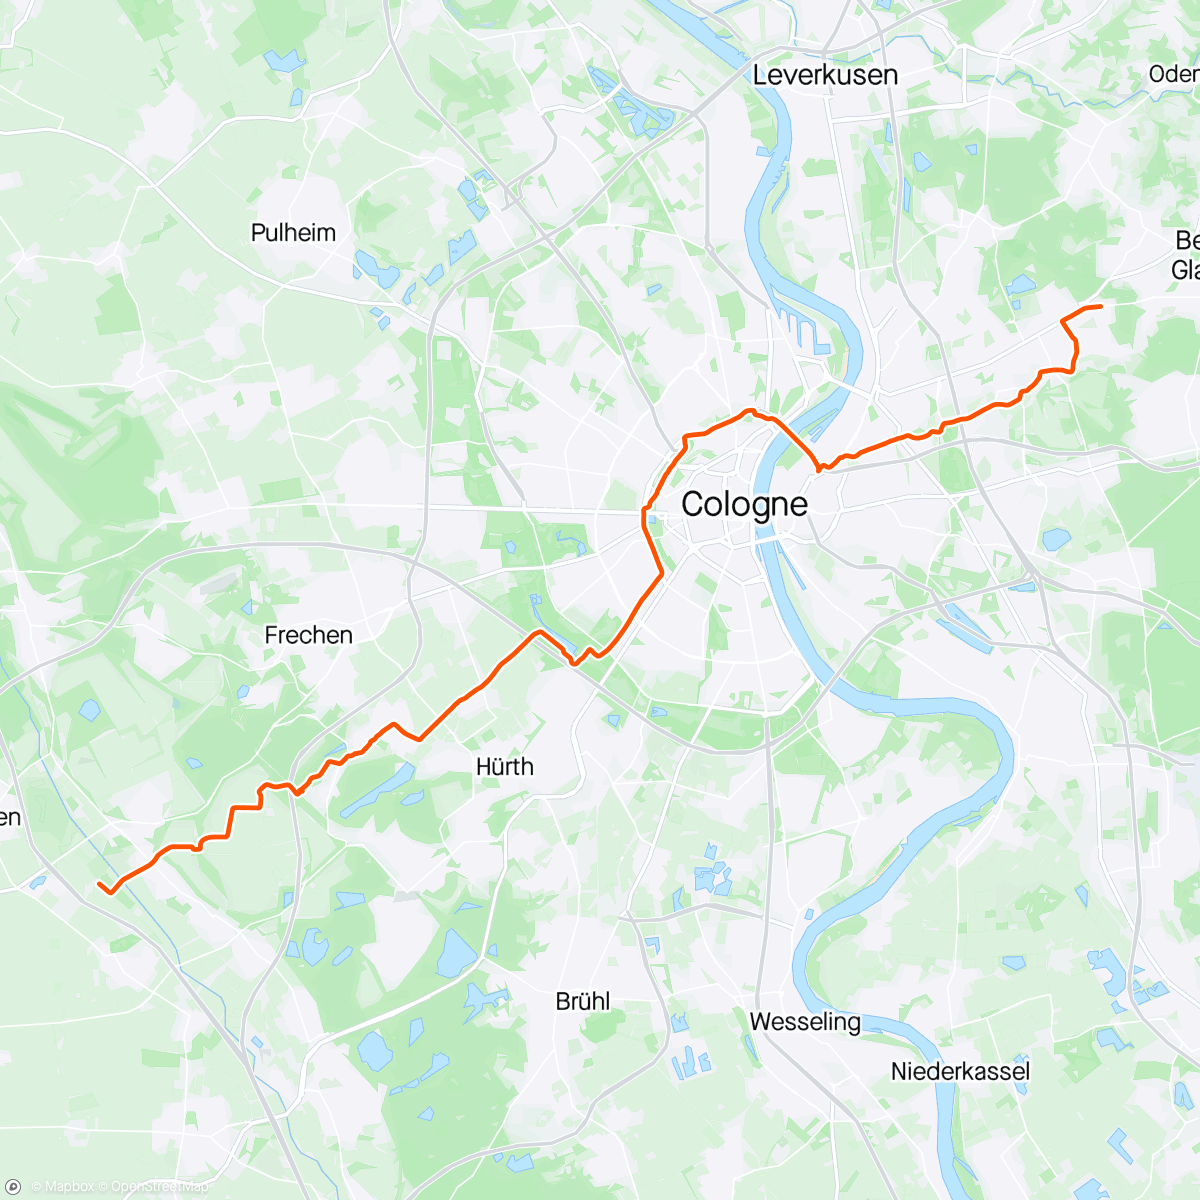 「Gravel Gymnicher Mühle nach Hause」活動的地圖